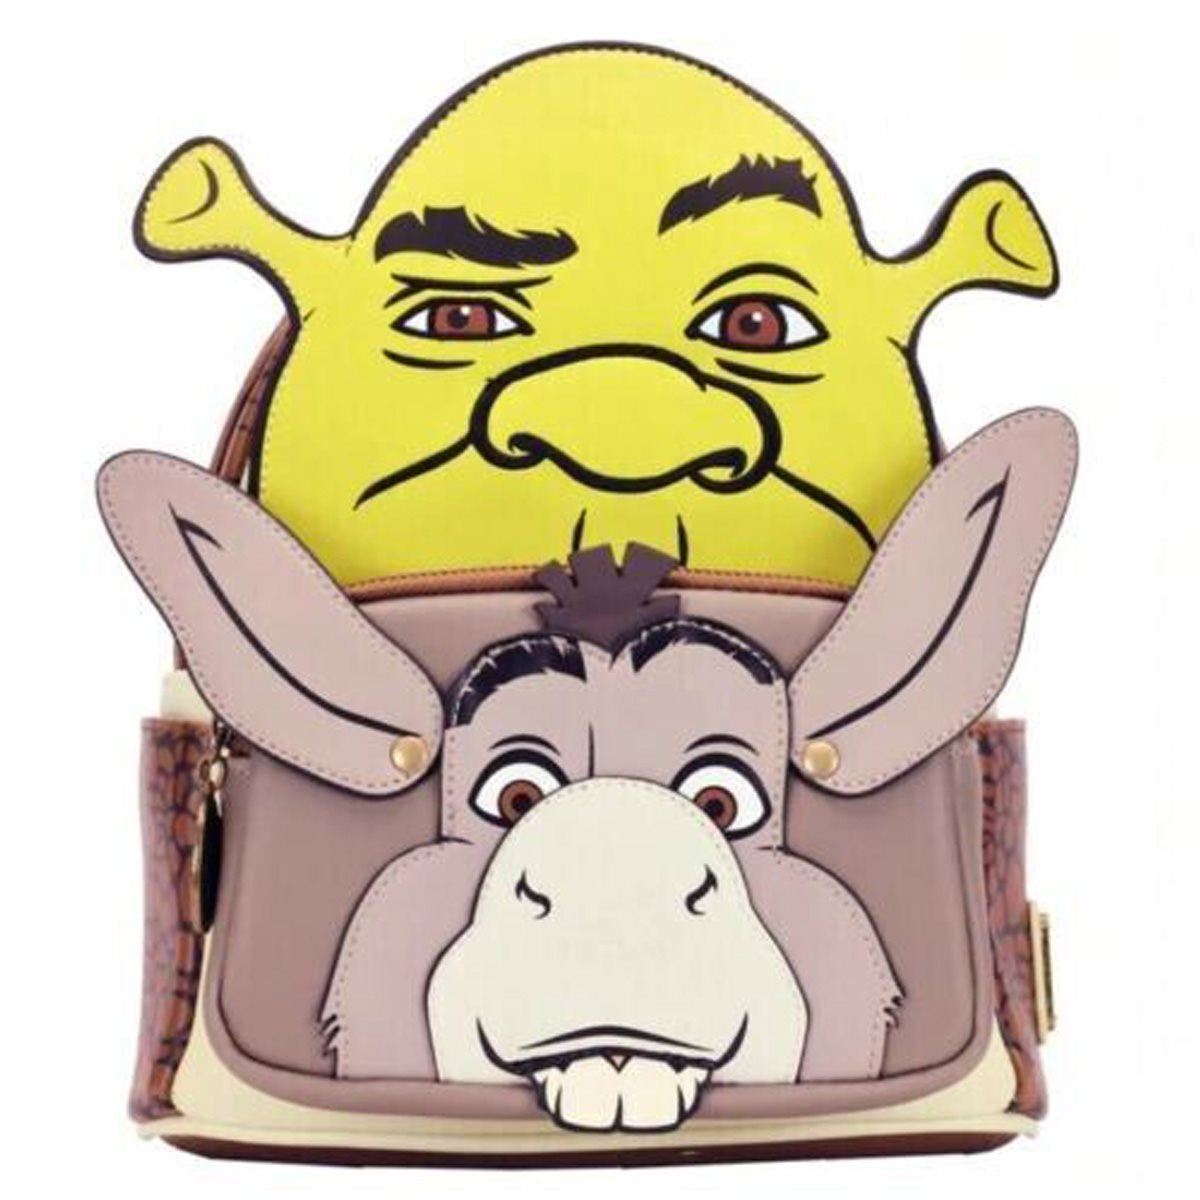 Loungefly - Shrek and Donkey Cosplay Mini-Backpack (Pre-Order)